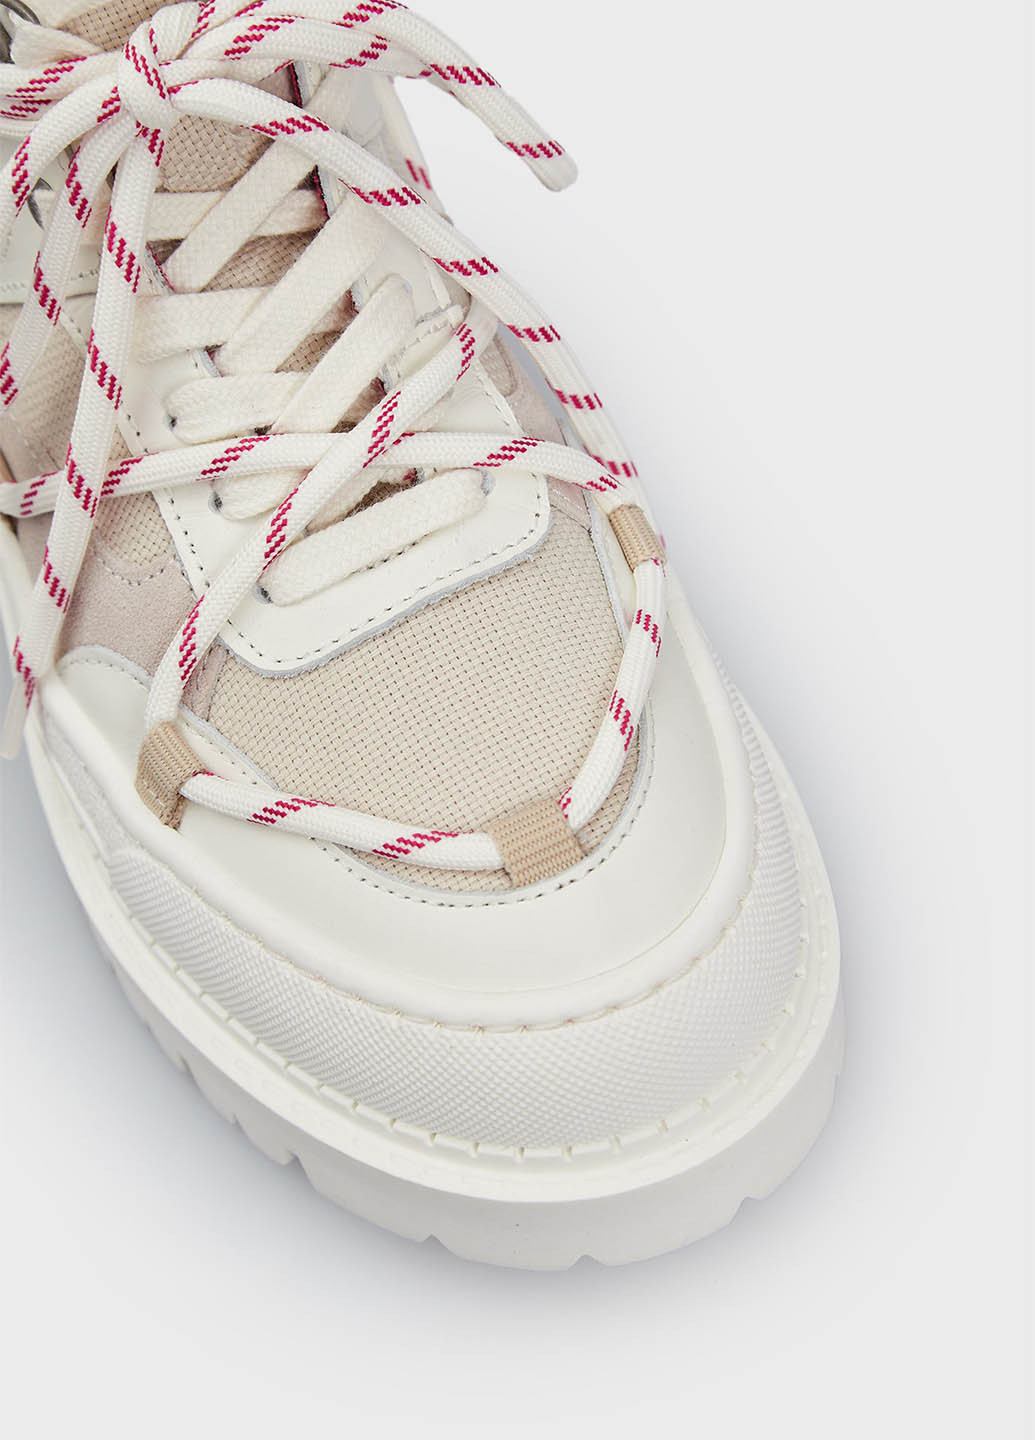 Осенние ботинки Tommy Jeans с белой подошвой из искусственной кожи, тканевые